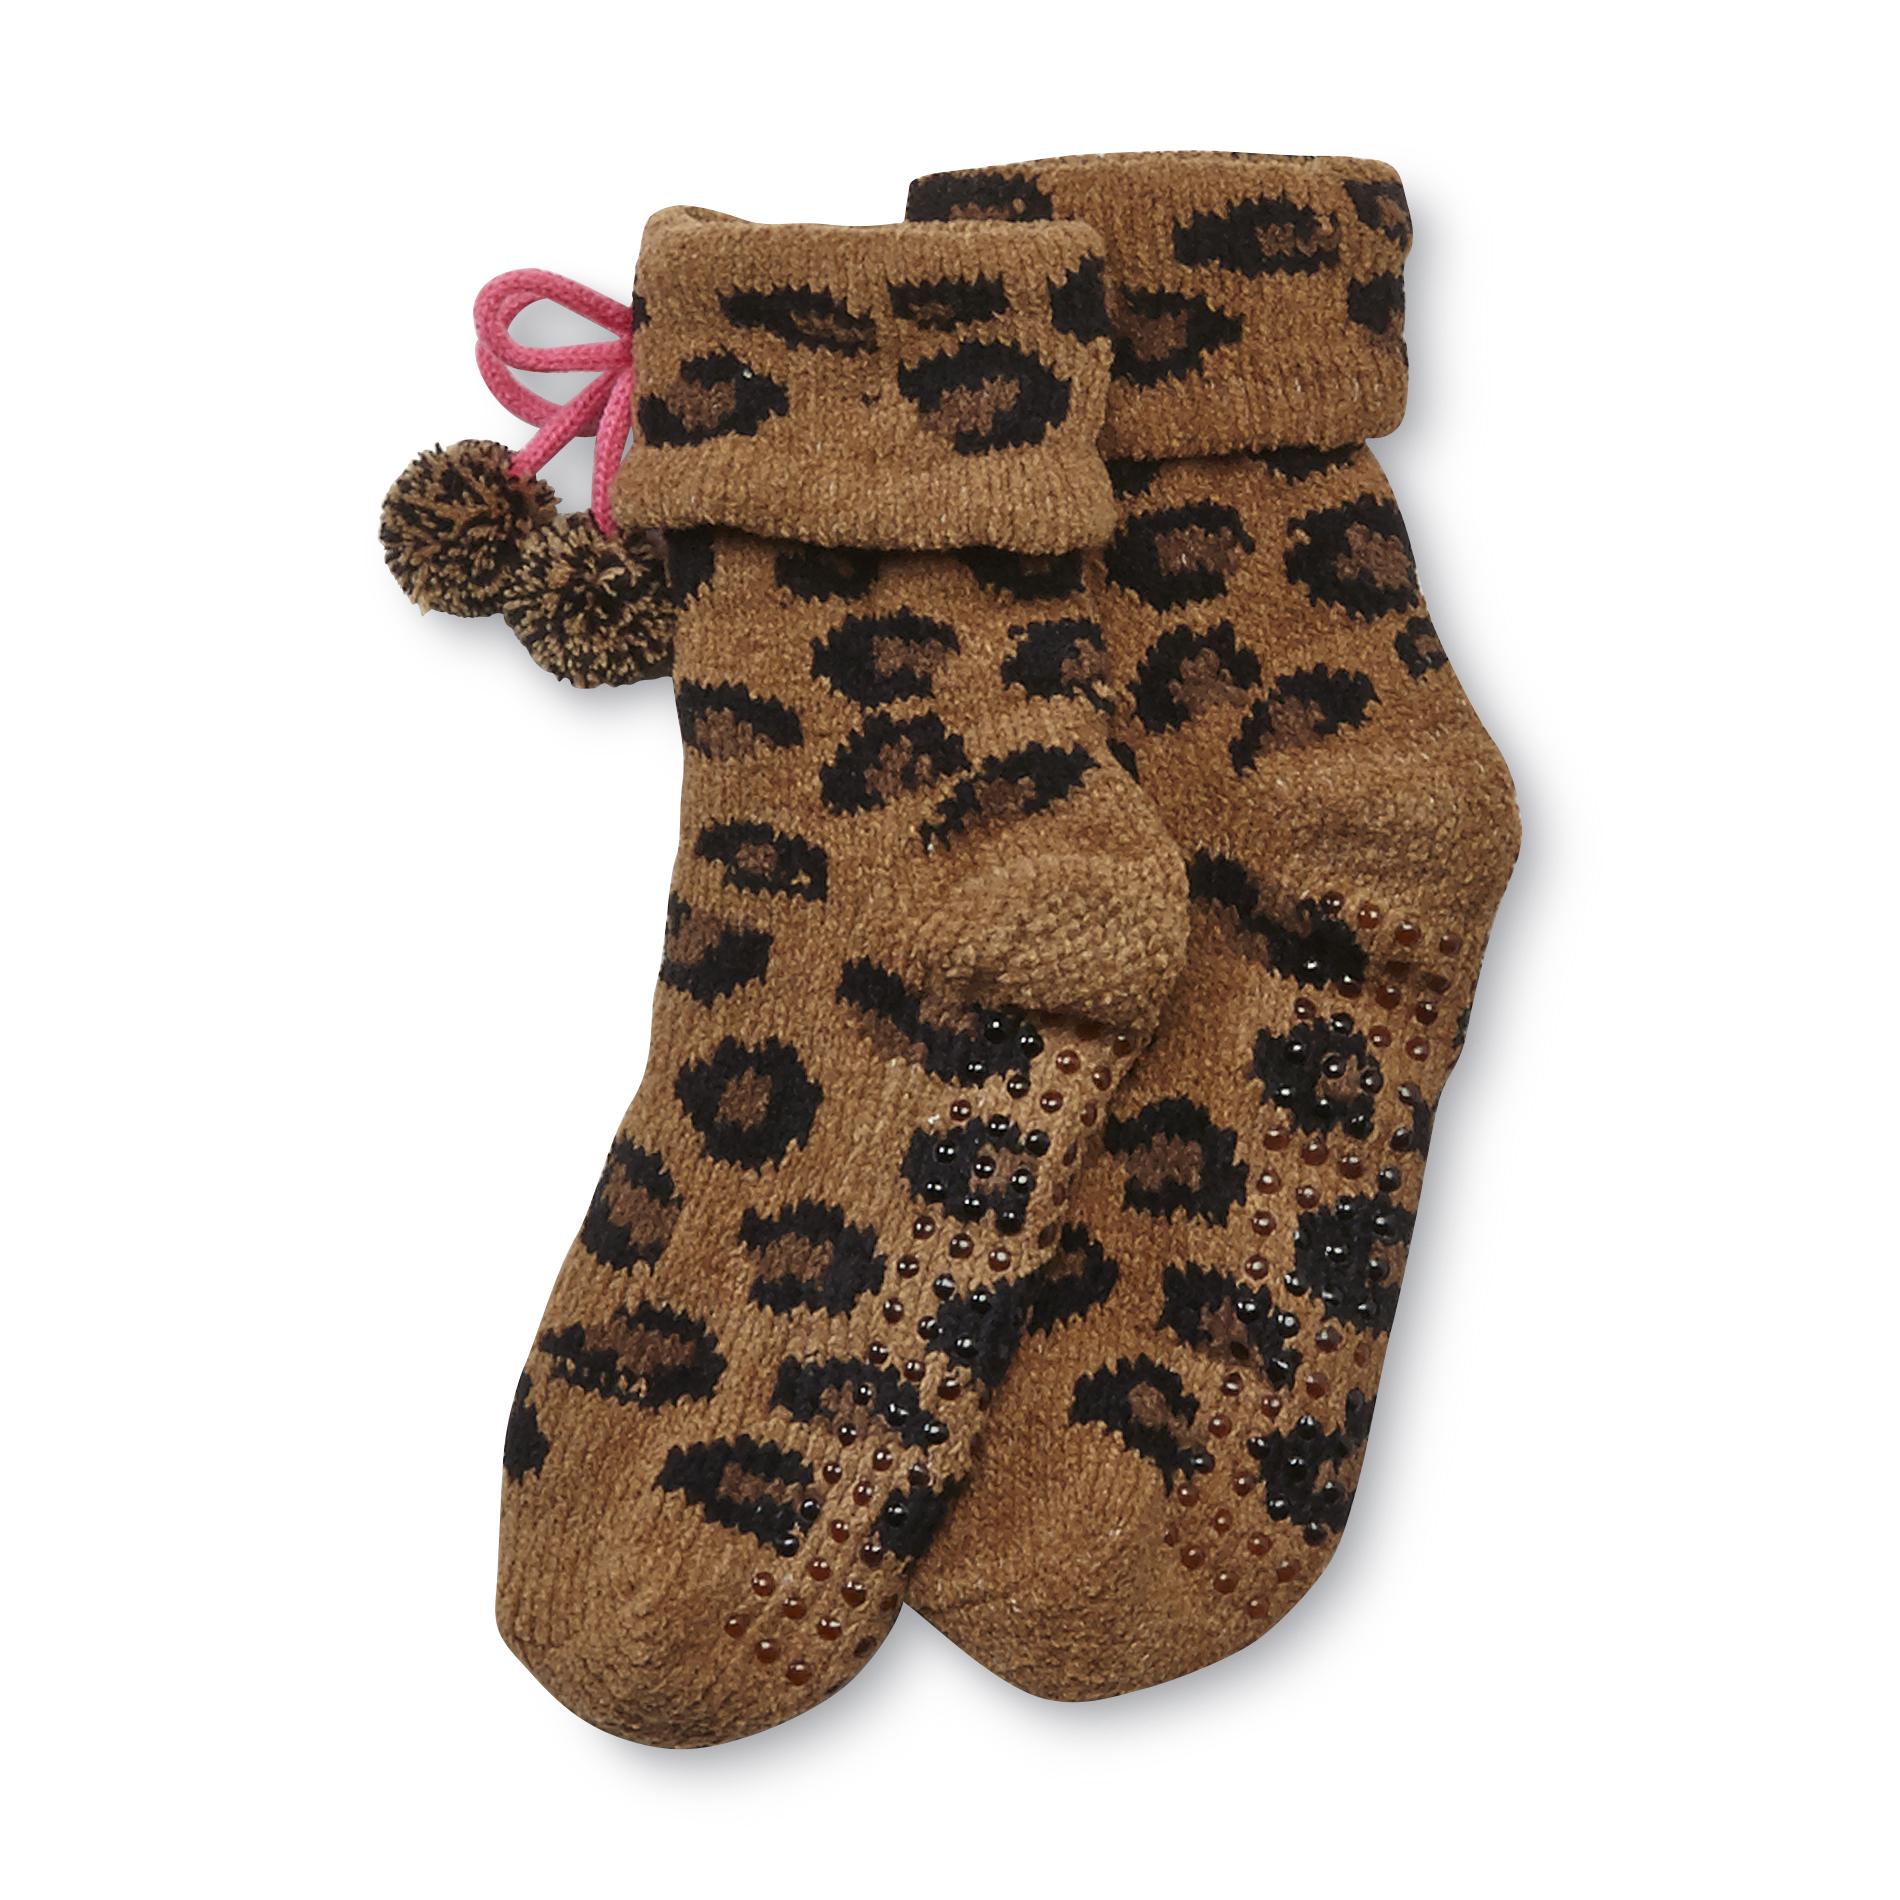 Joe Boxer Women's Chenille Slipper Socks - Leopard Print